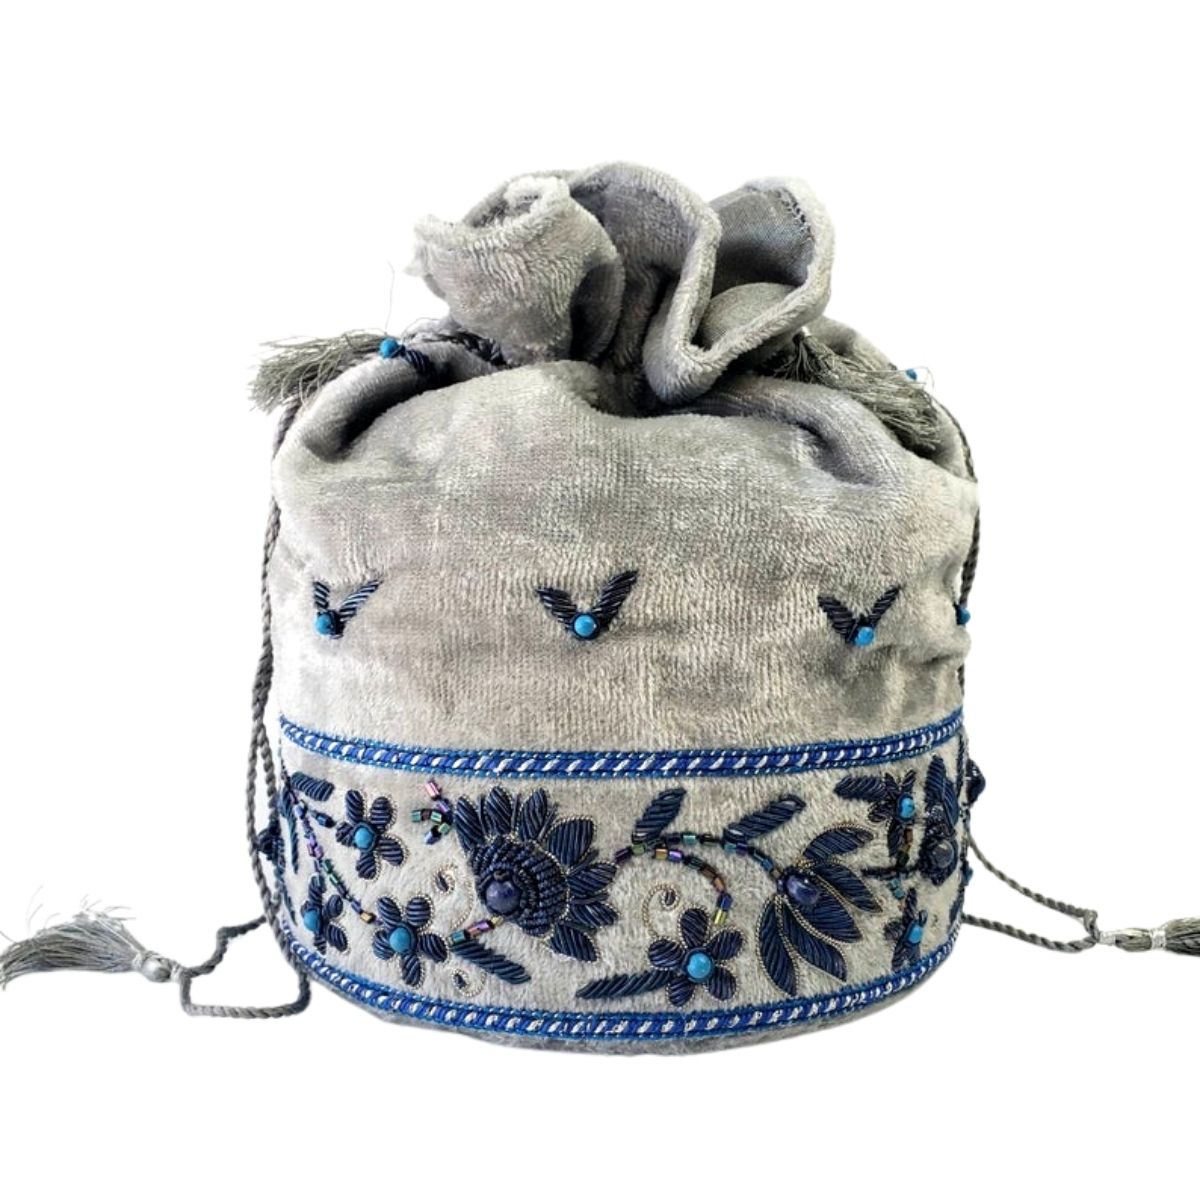 Designer gray velvet potli bag embroidered with blue flowers, zardozi purse. 